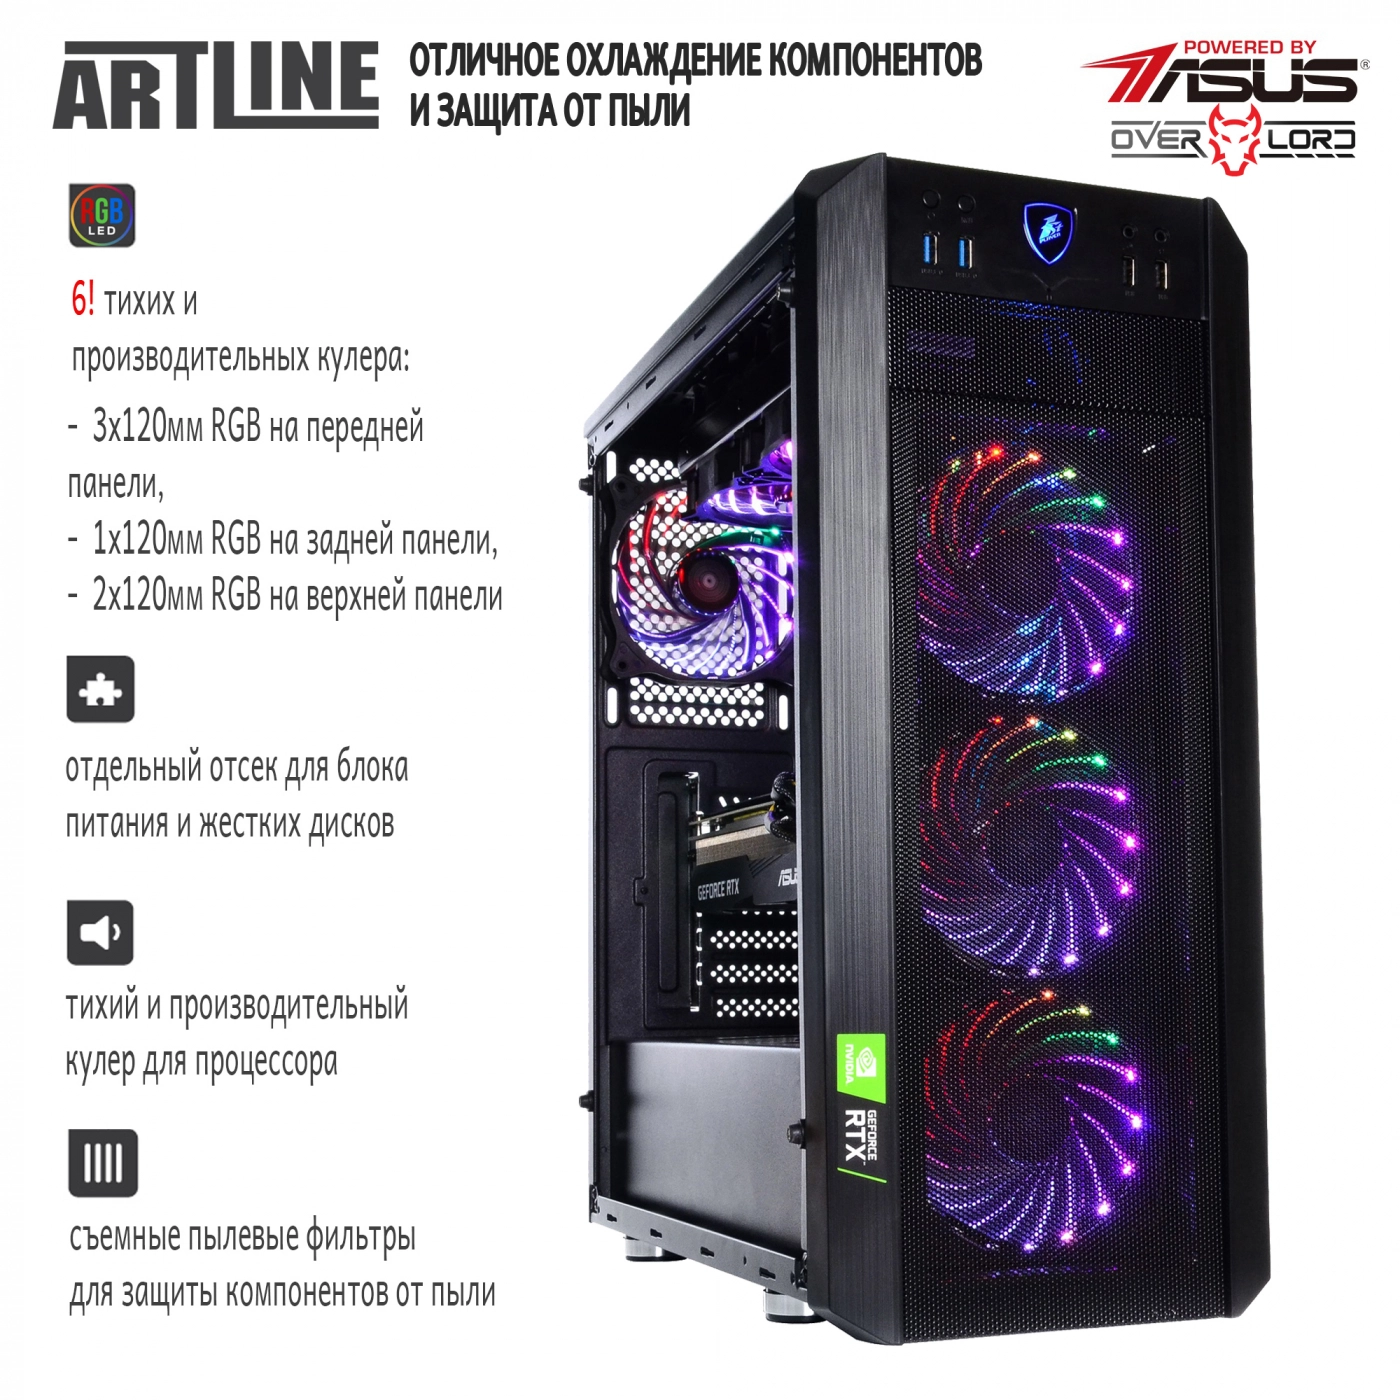 Купить Компьютер ARTLINE Gaming X95v34 - фото 4